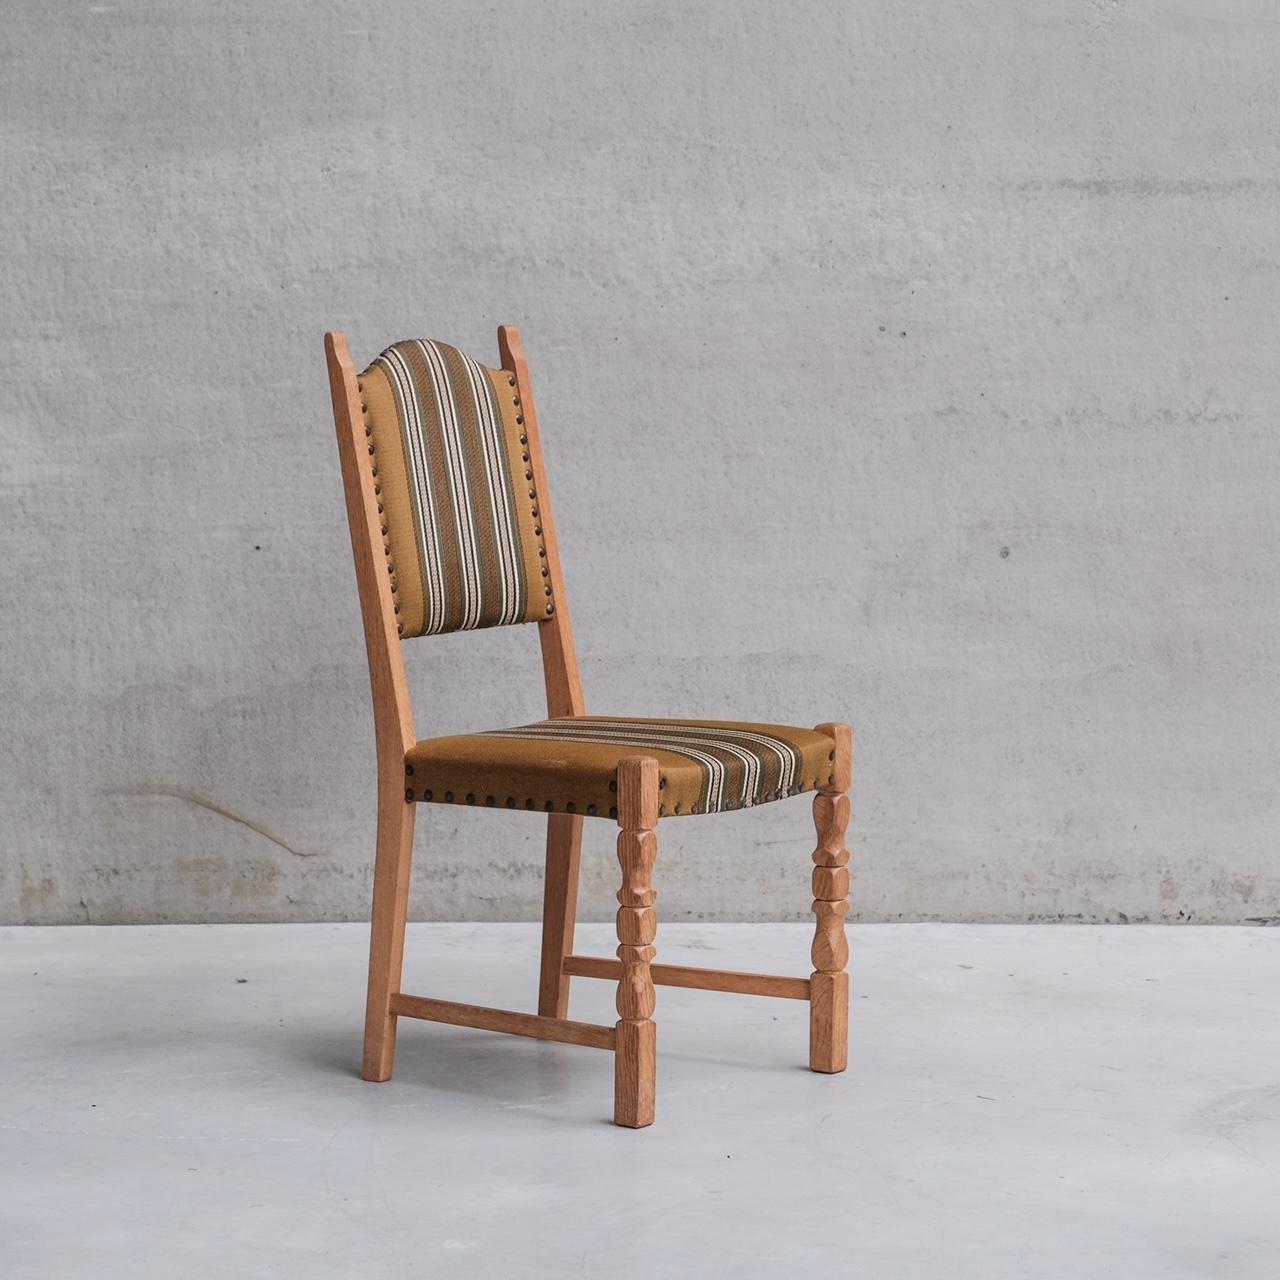 Un juego de seis sillas de comedor tapizadas.

Dinamarca, c1960s.

El precio es por el conjunto.

Se conserva la tapicería original, que está en relativamente buen estado, aunque puede presentar signos de envejecimiento; podemos volver a tapizarla